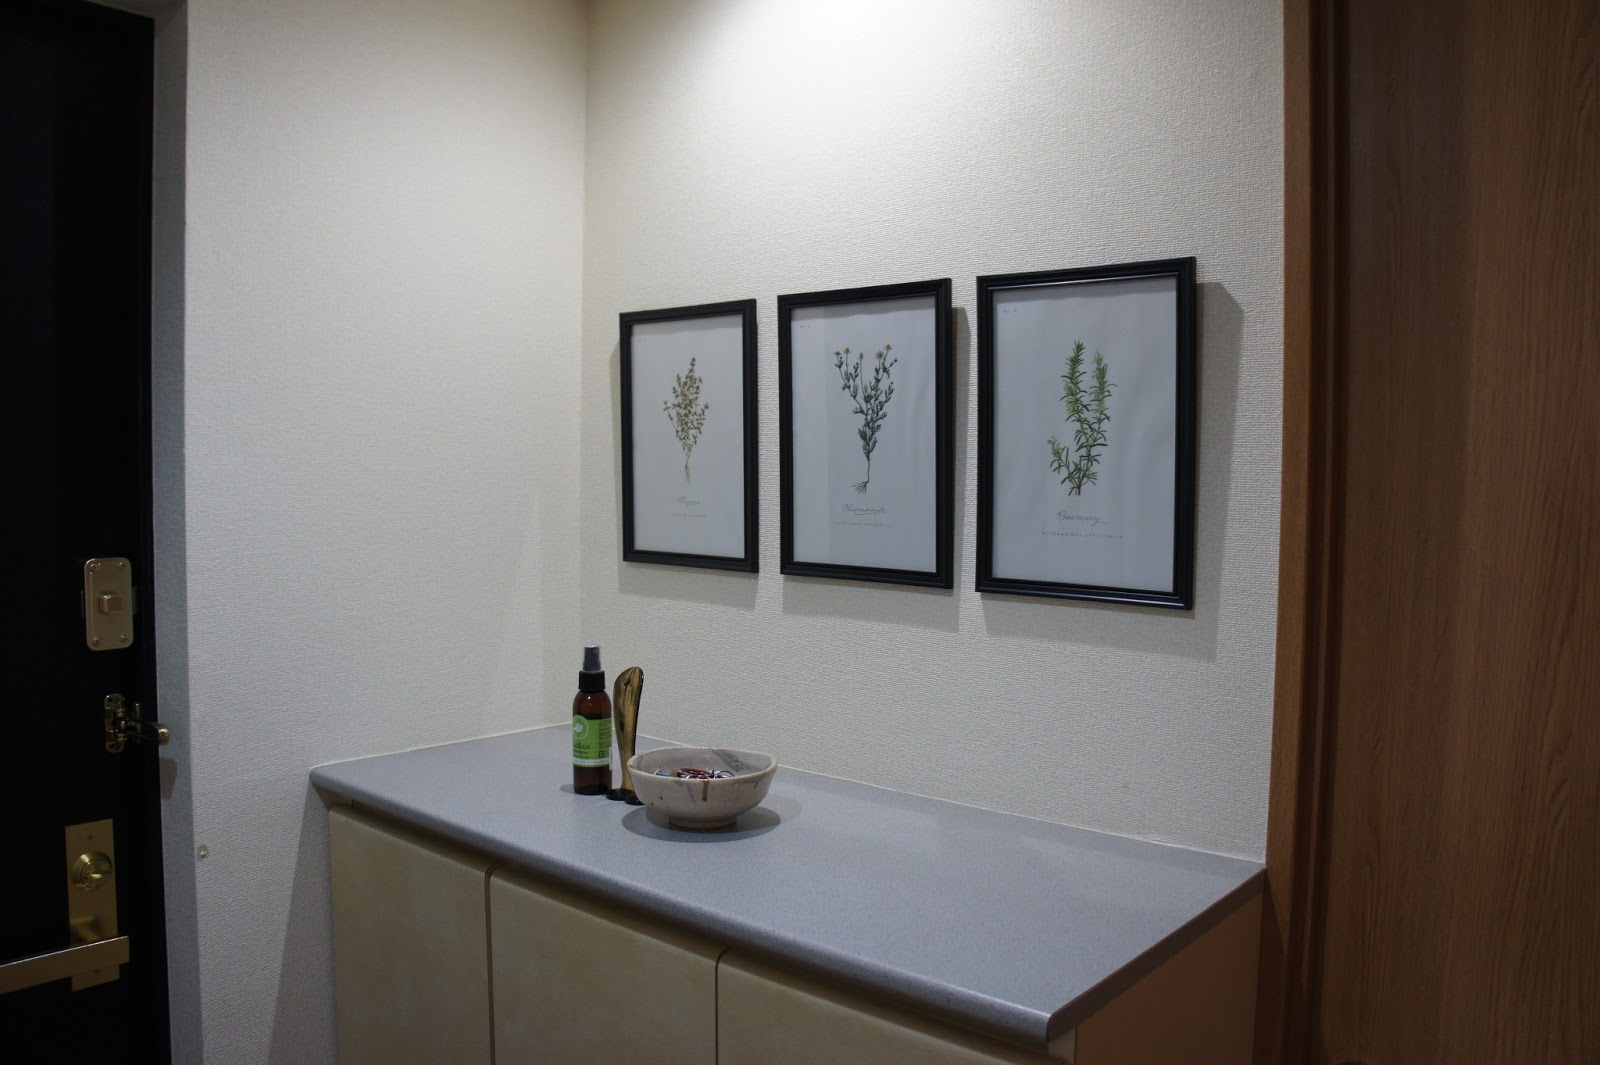 home, craft, and life インテリア、ハンドメイド、ときどきファッション 玄関をオシャレに 総額400円で絵を飾る